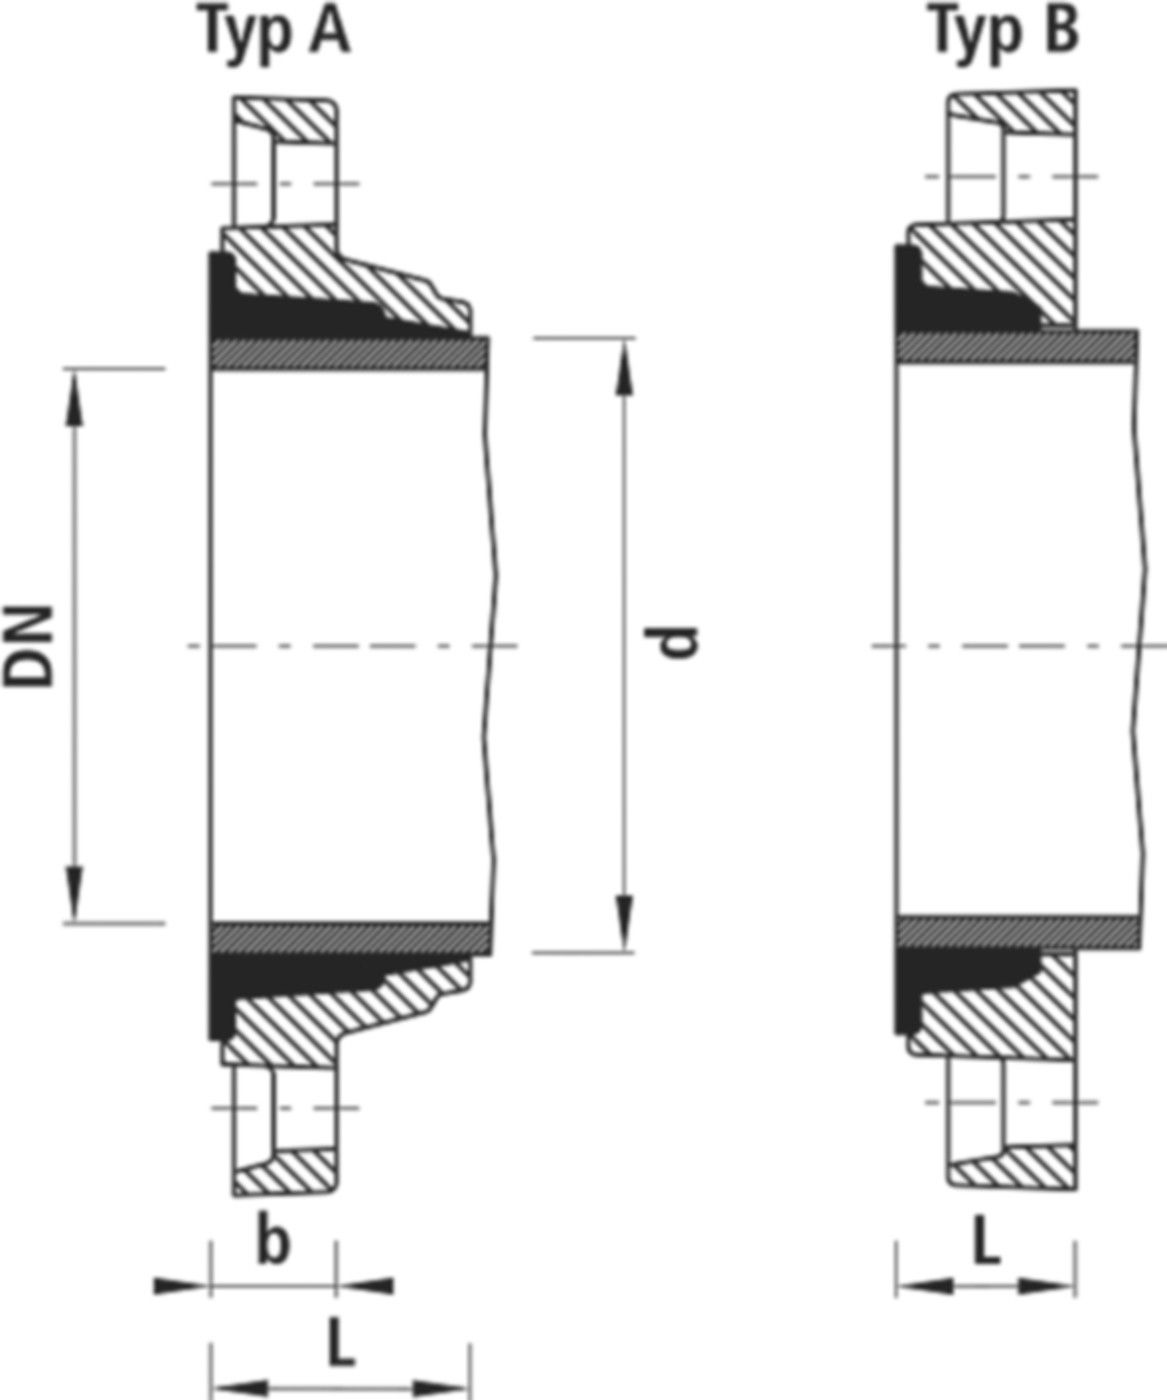 Zweikammer-Flansch für Stahlrohre 7130 PN 10/16 DN 65 / AD 76mm - Hawle Flanschformstücke